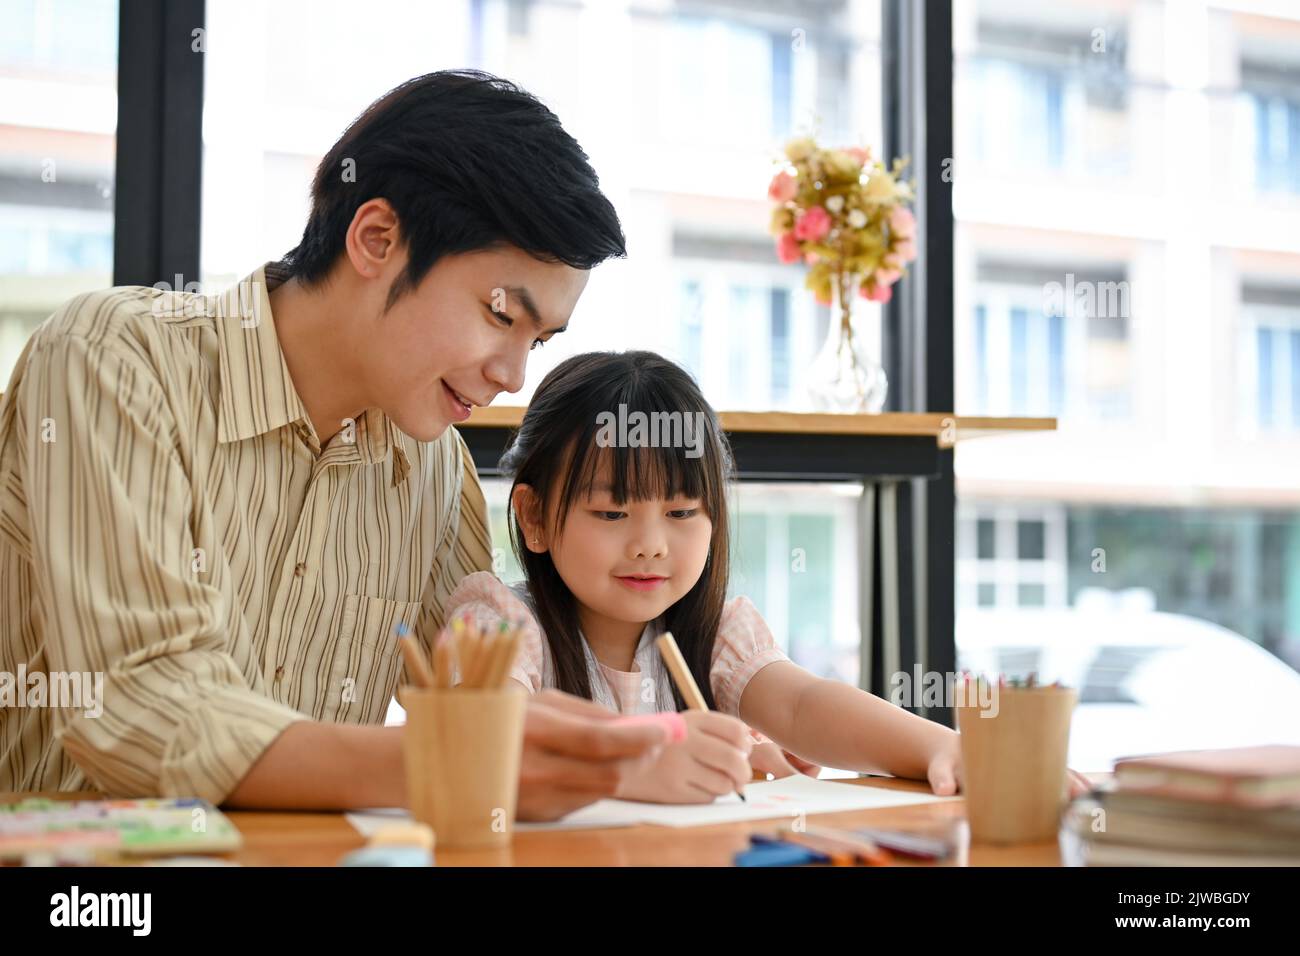 Alegre maestro de arte masculino asiático está enseñando y mostrando cómo dibujar animales lindos a su joven estudiante femenina. Niños con Arte Concepto Foto de stock